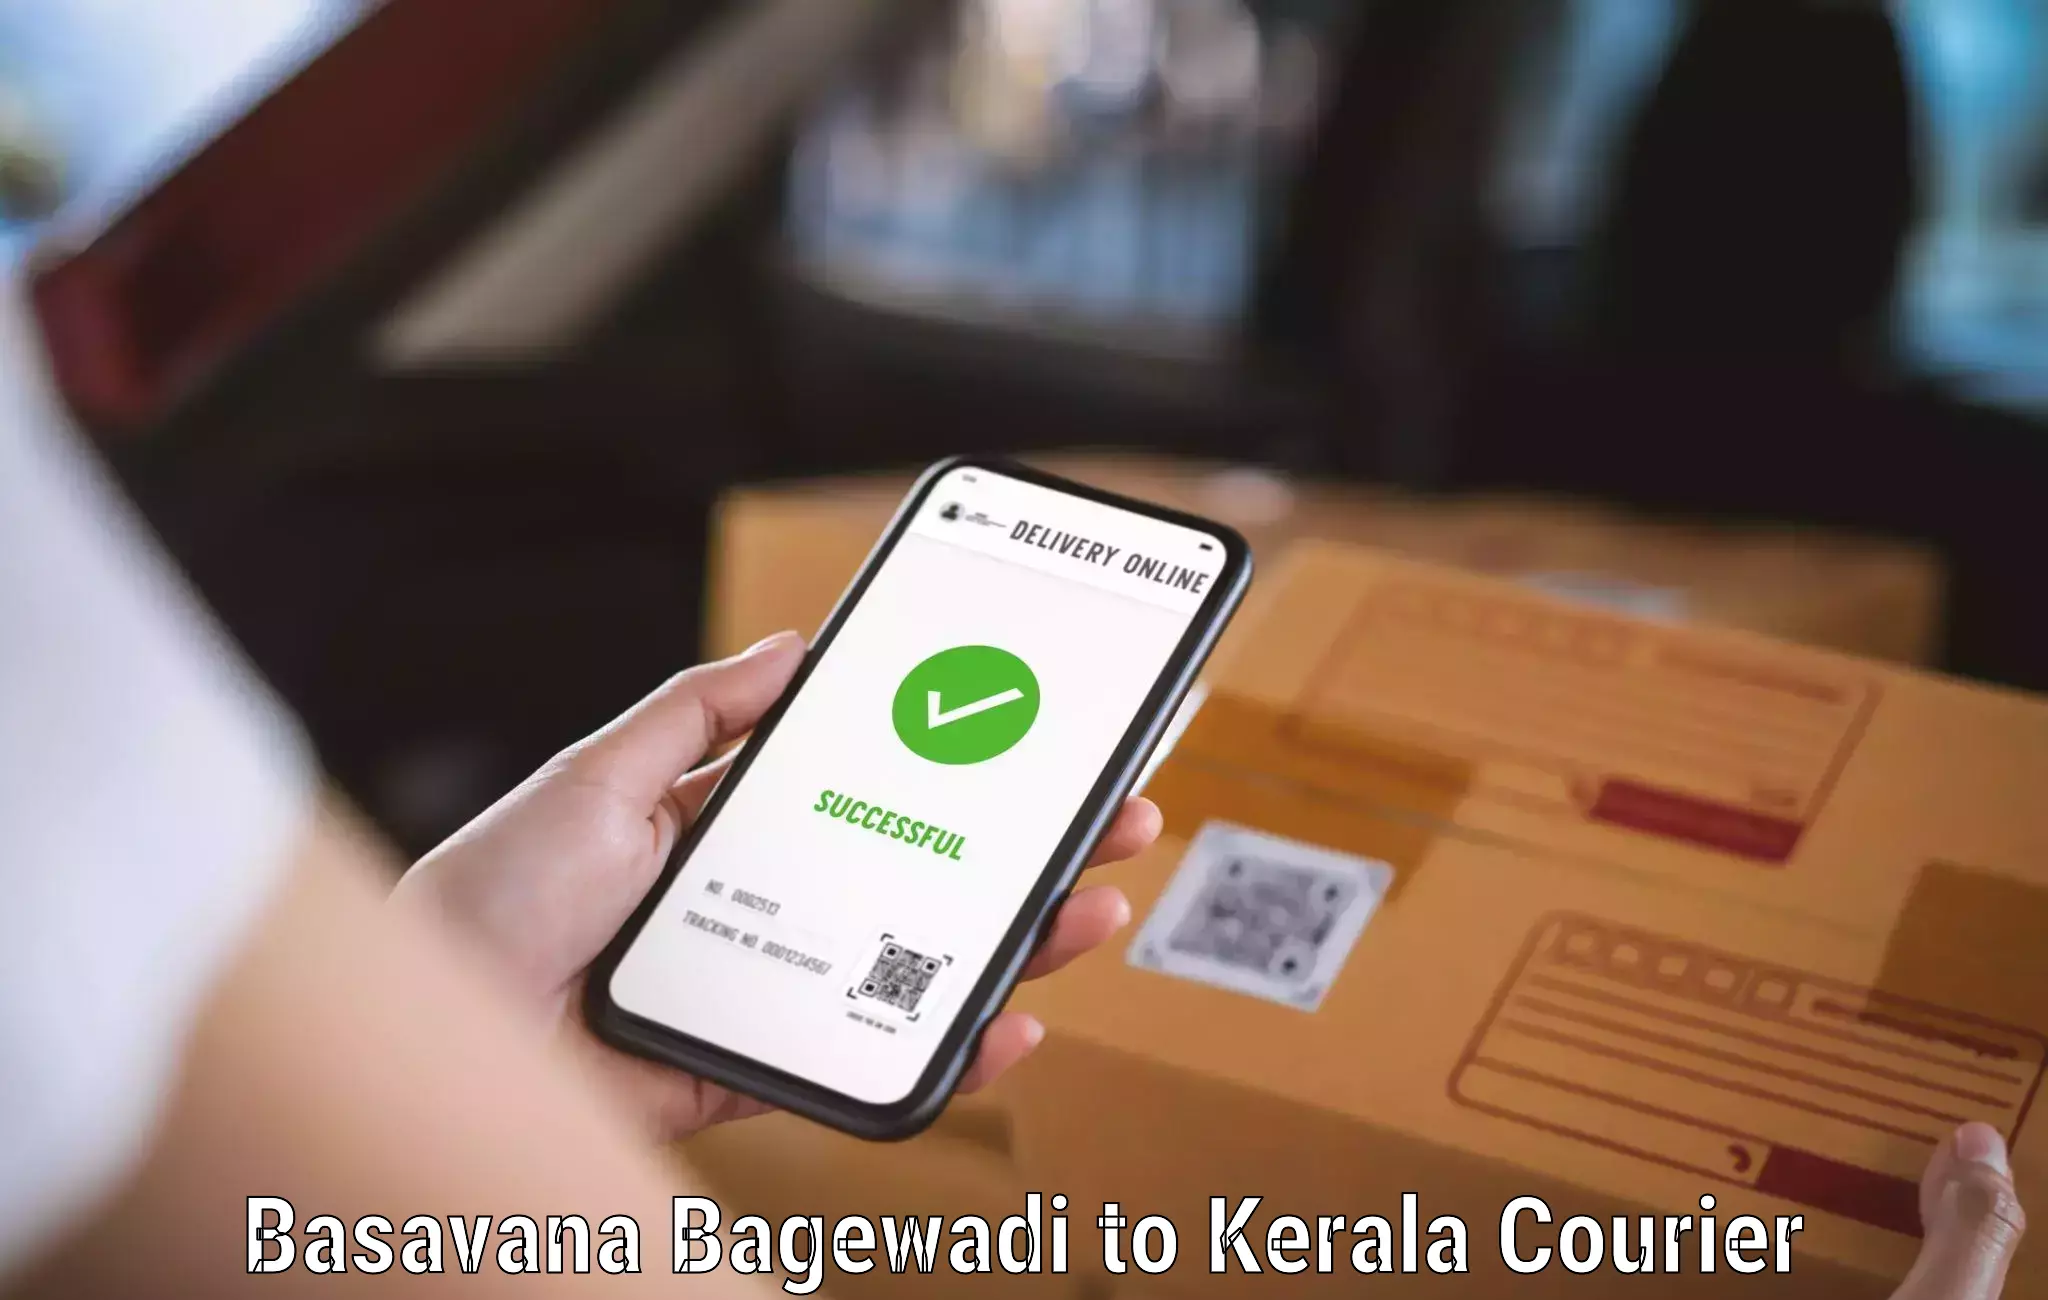 Express delivery solutions Basavana Bagewadi to Chungathara